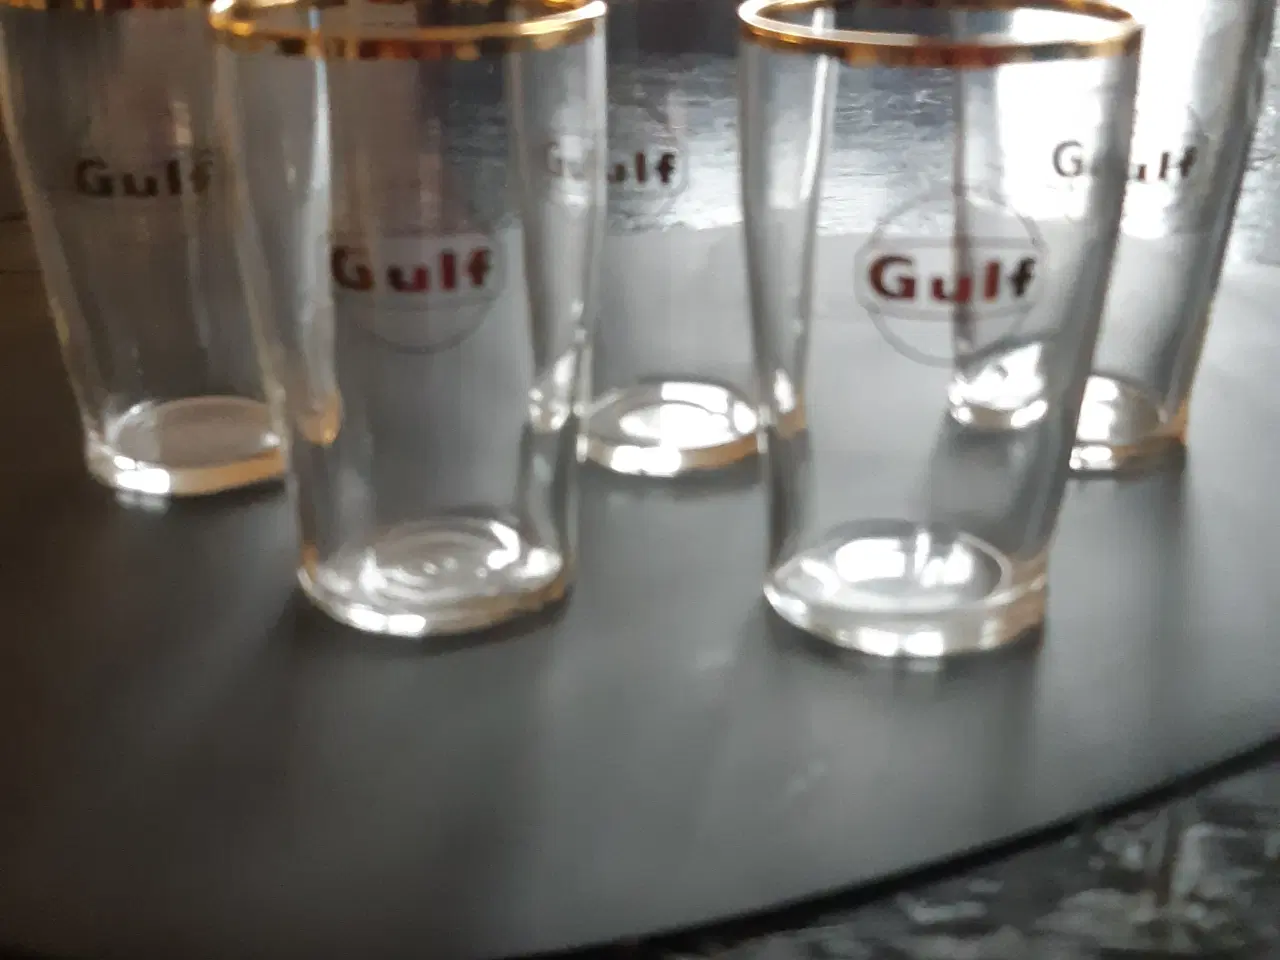 Billede 1 - Ølglas med Gulf logo